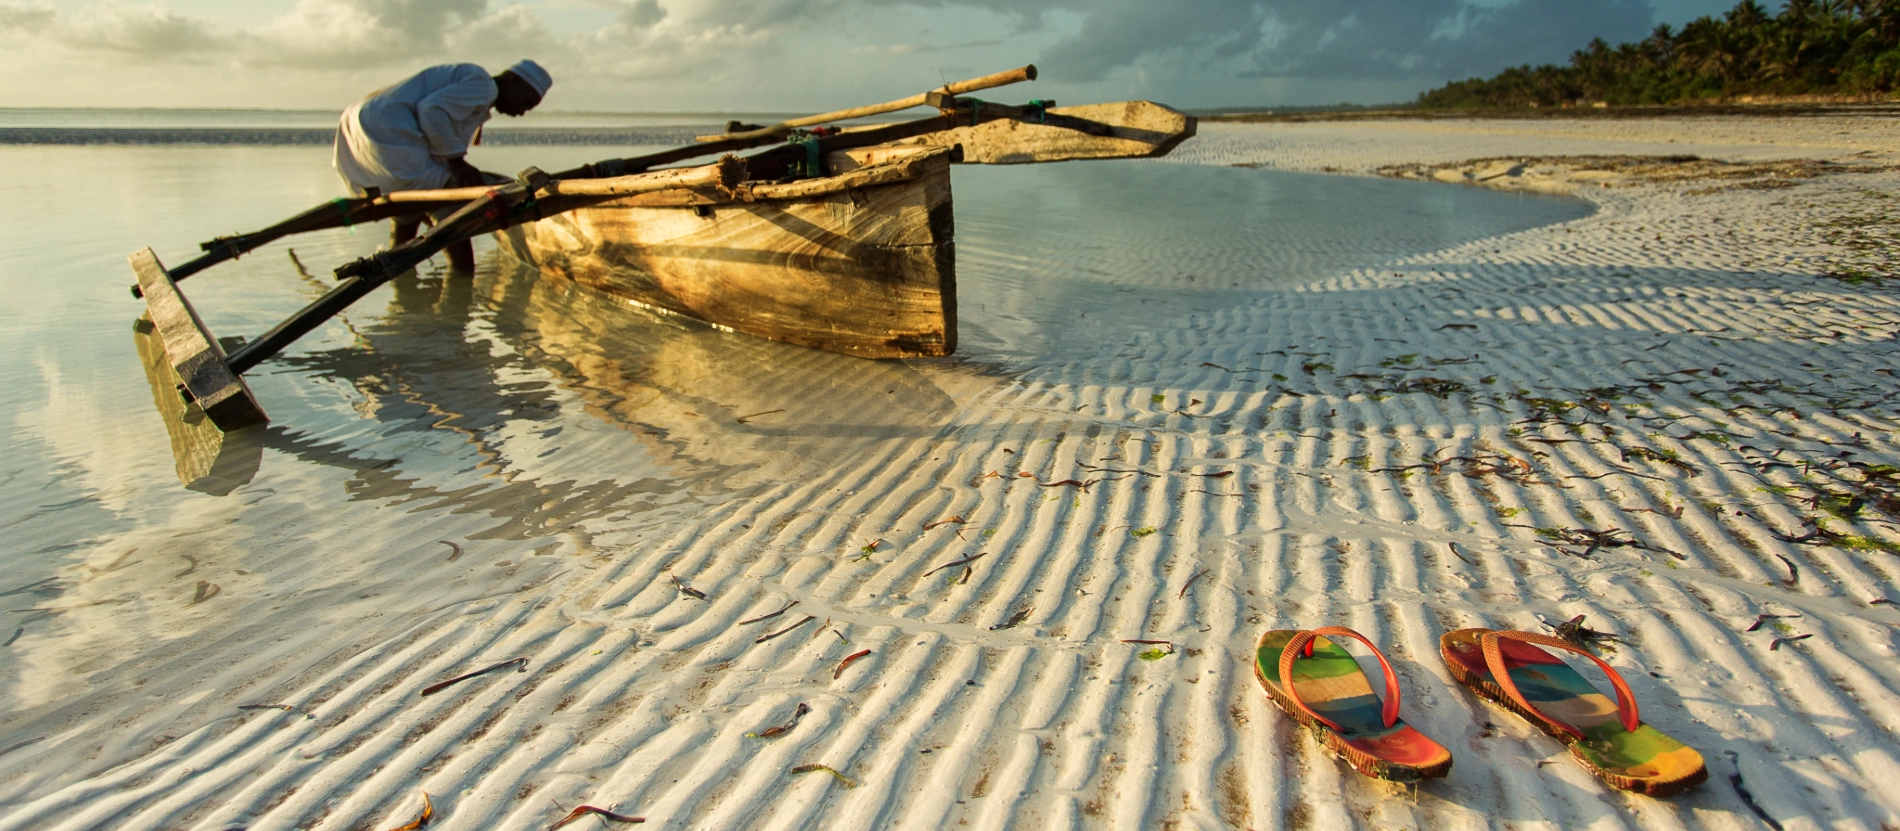 Beskuren_Zanzibar_strand_dhow_AdobeStock_98394220